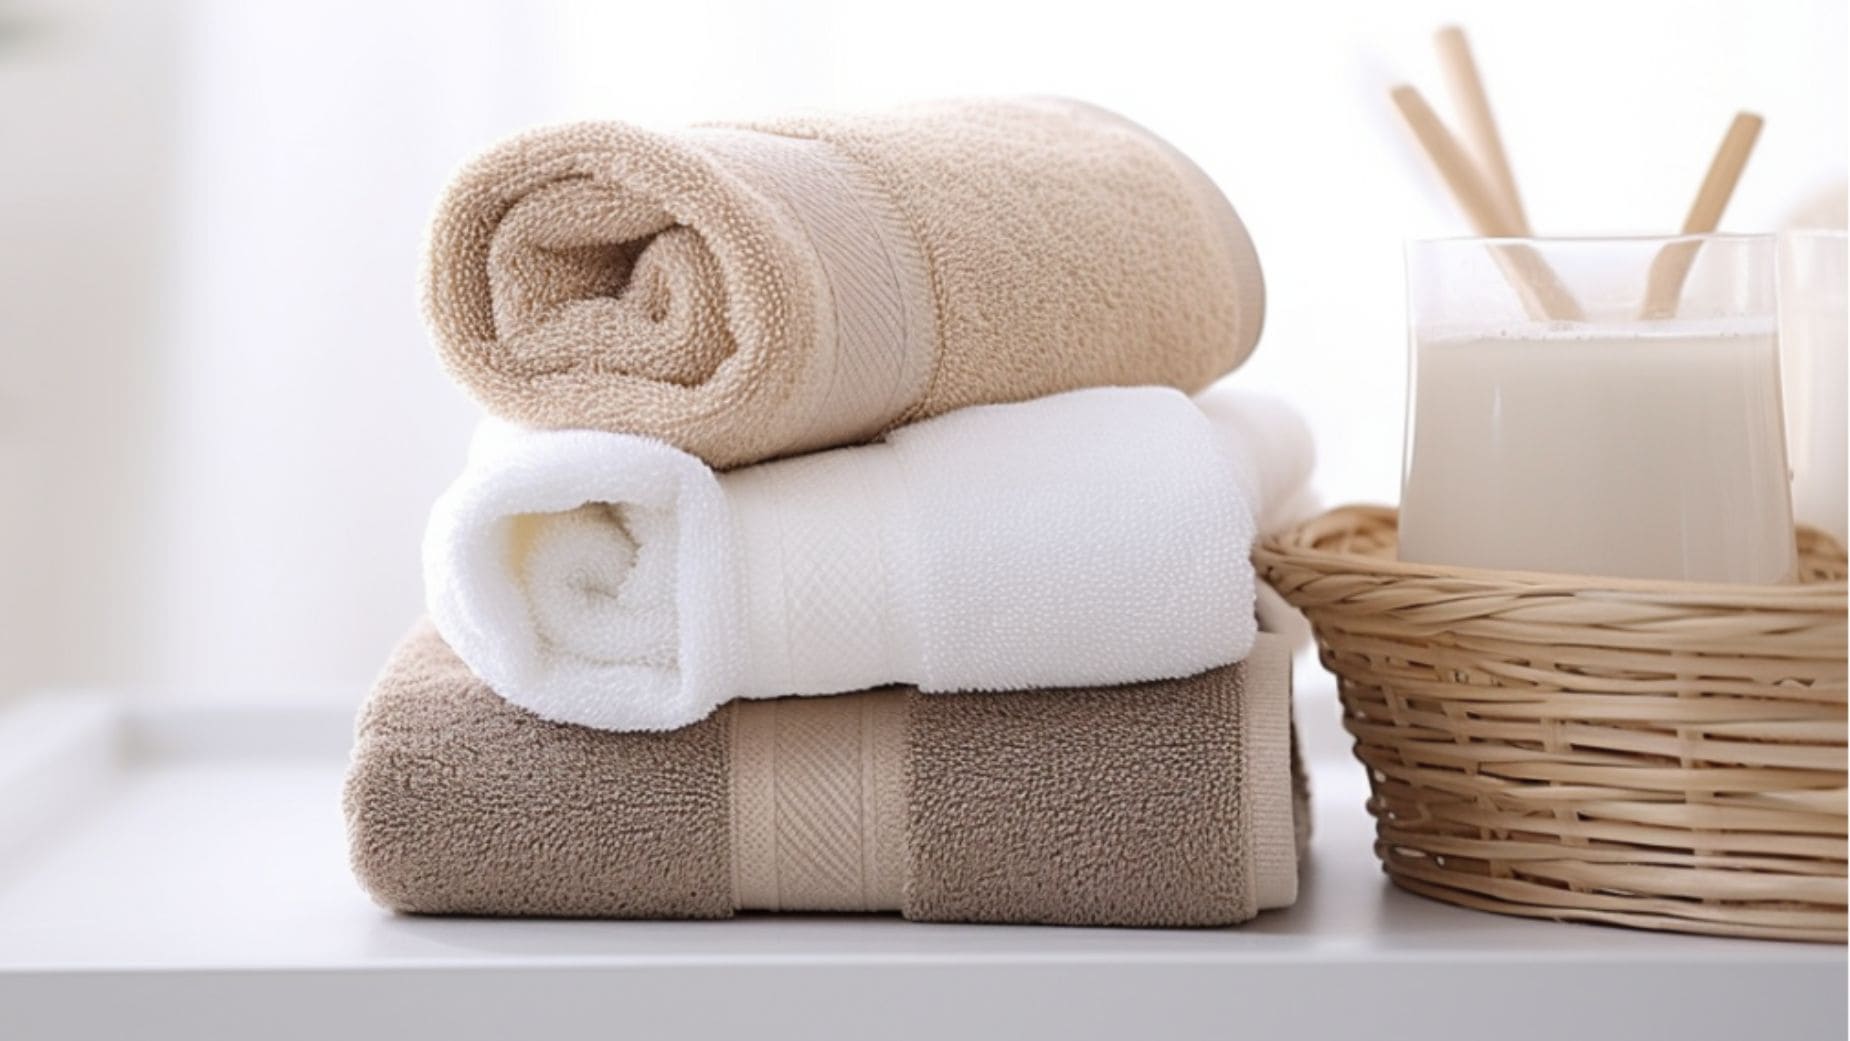 Ingredientes para lavar las toallas del baño y eliminar las manchas